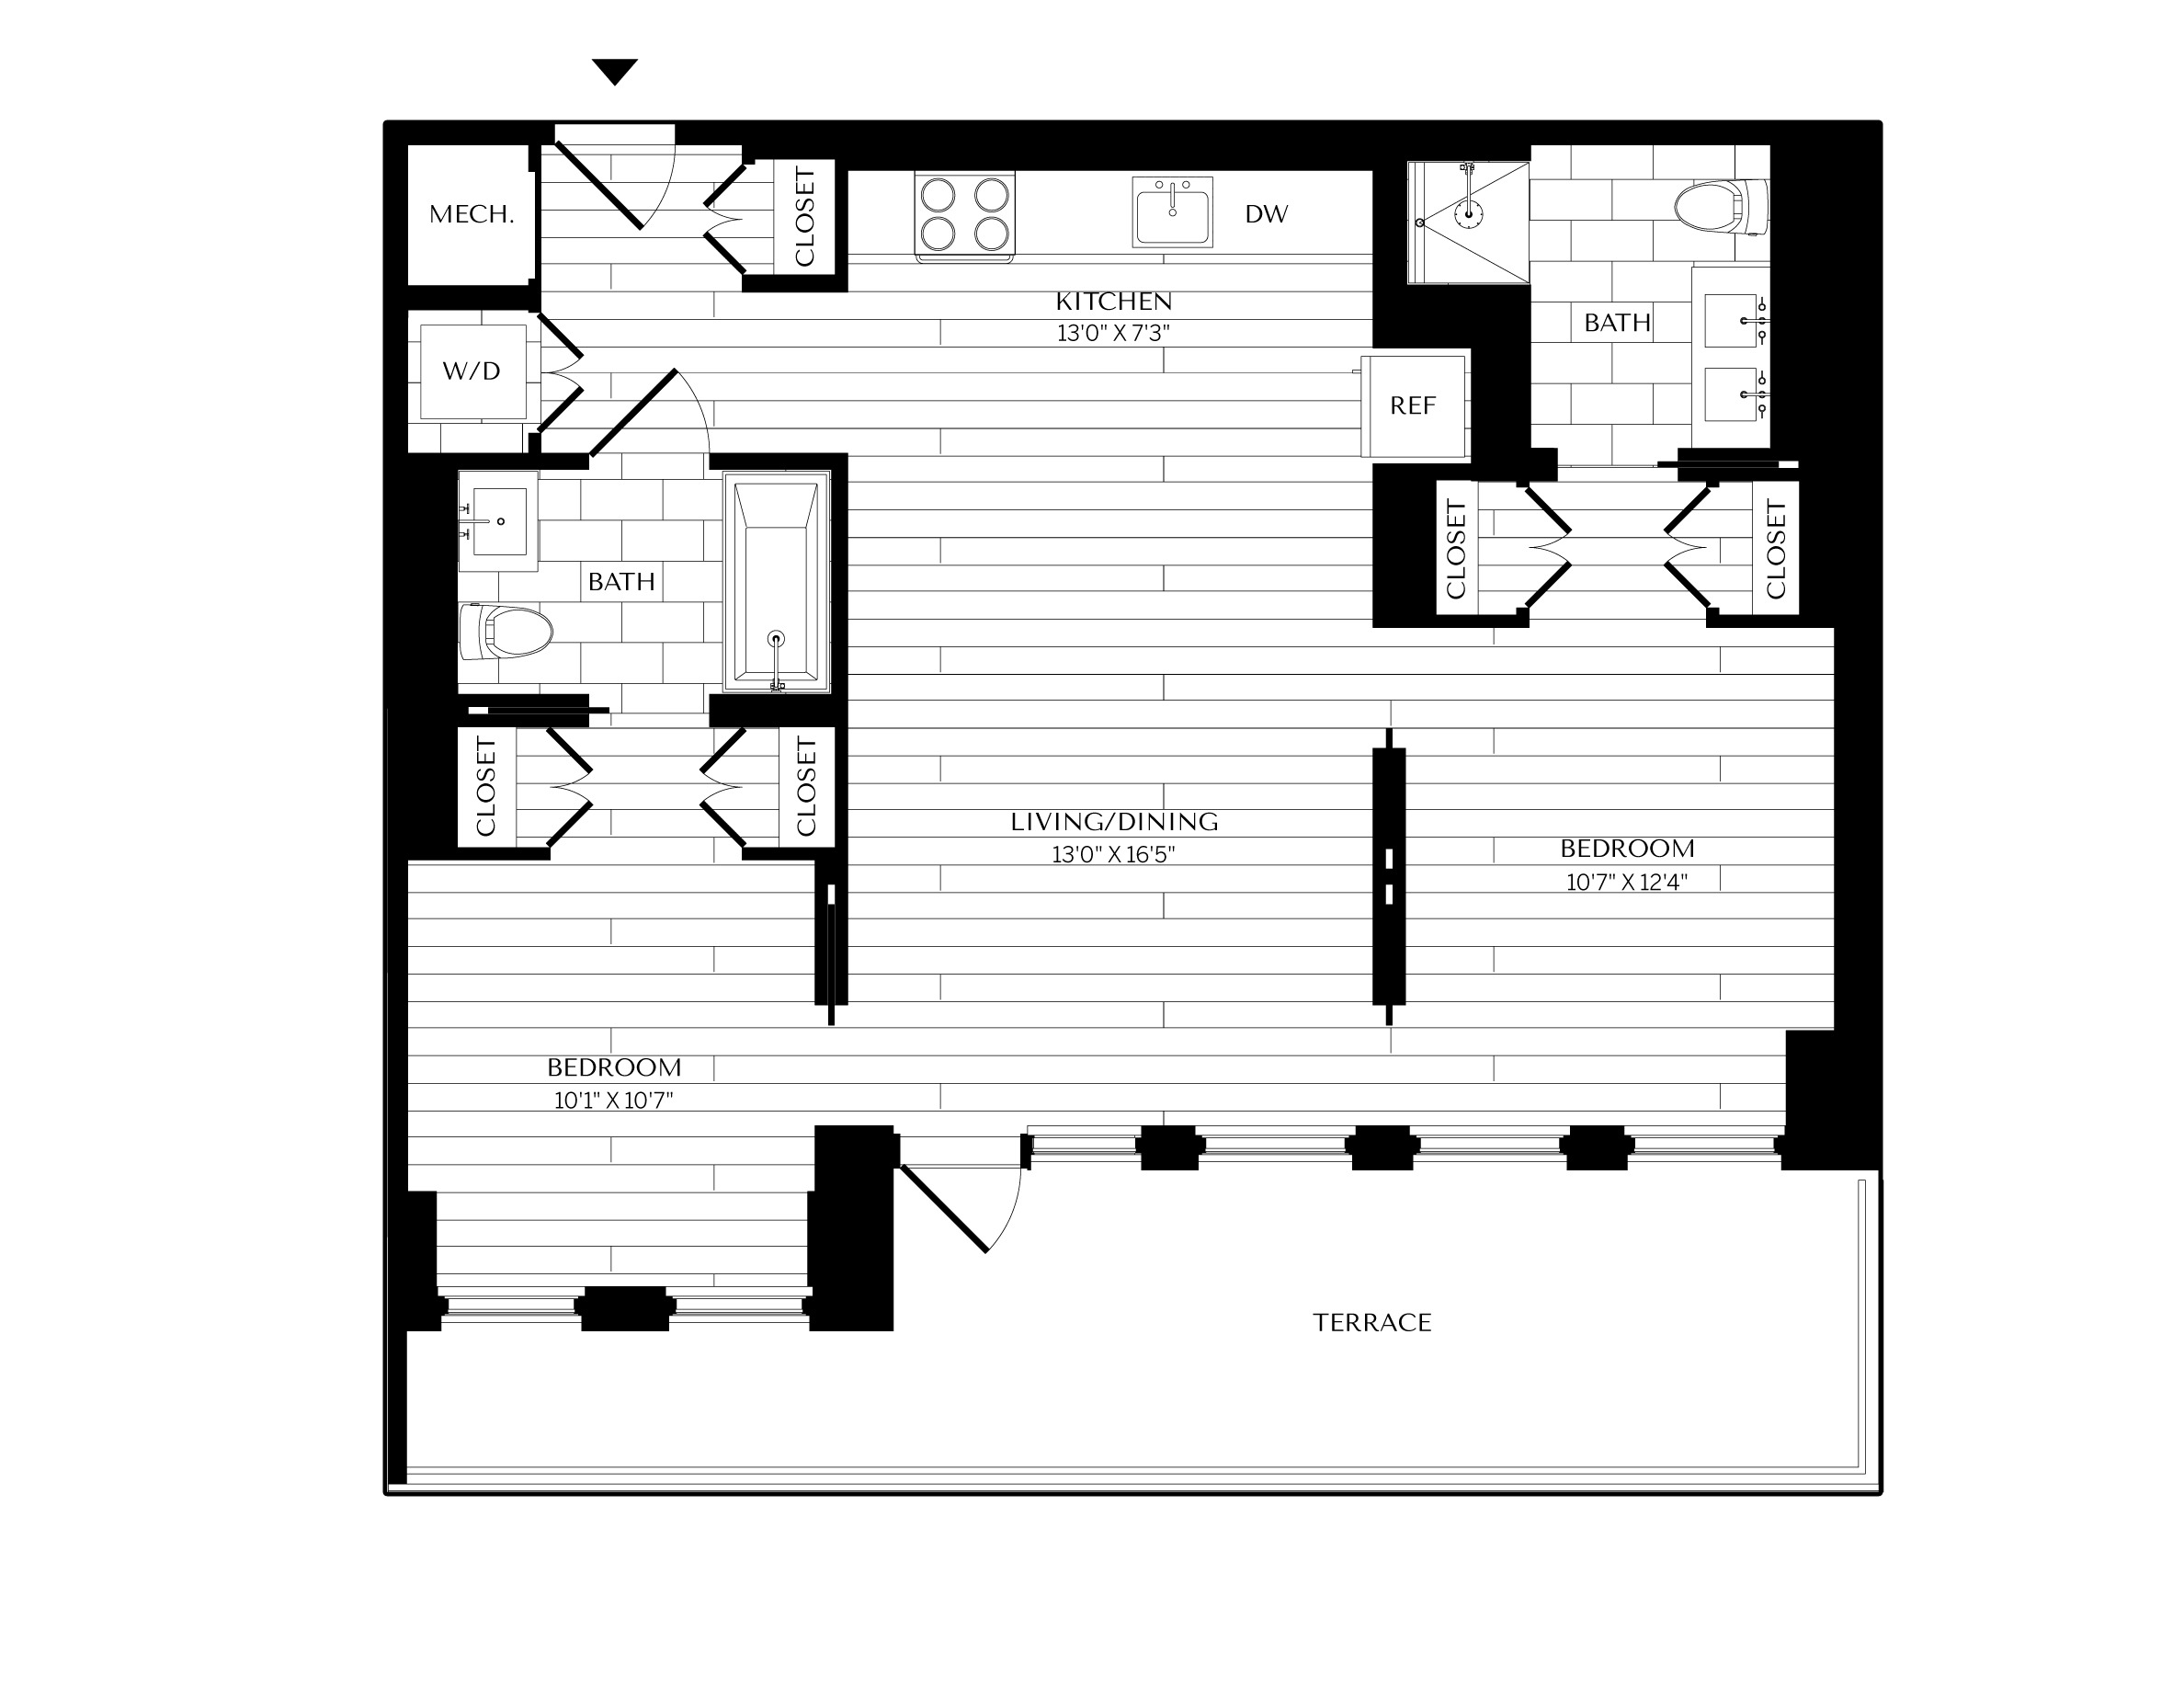 Floorplan image of unit 1118